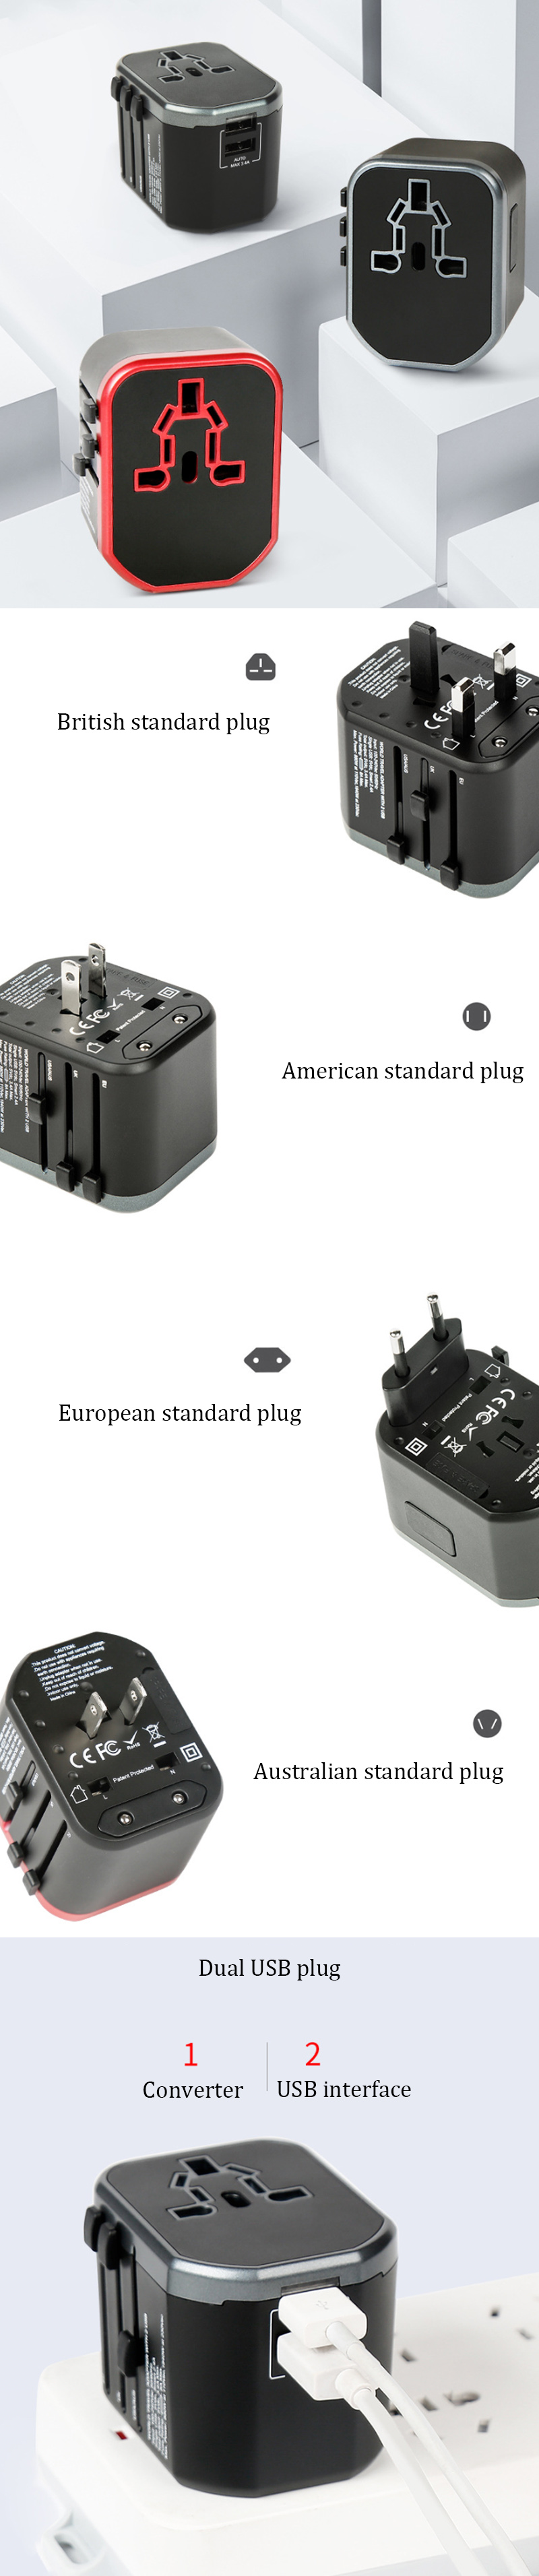 IPReereg-USB-Conversion-Plug-Travel-Camping-Portable-Plug-Adapter-US-EU-AU-UK-Plug-Power-Adapter-1408246-1